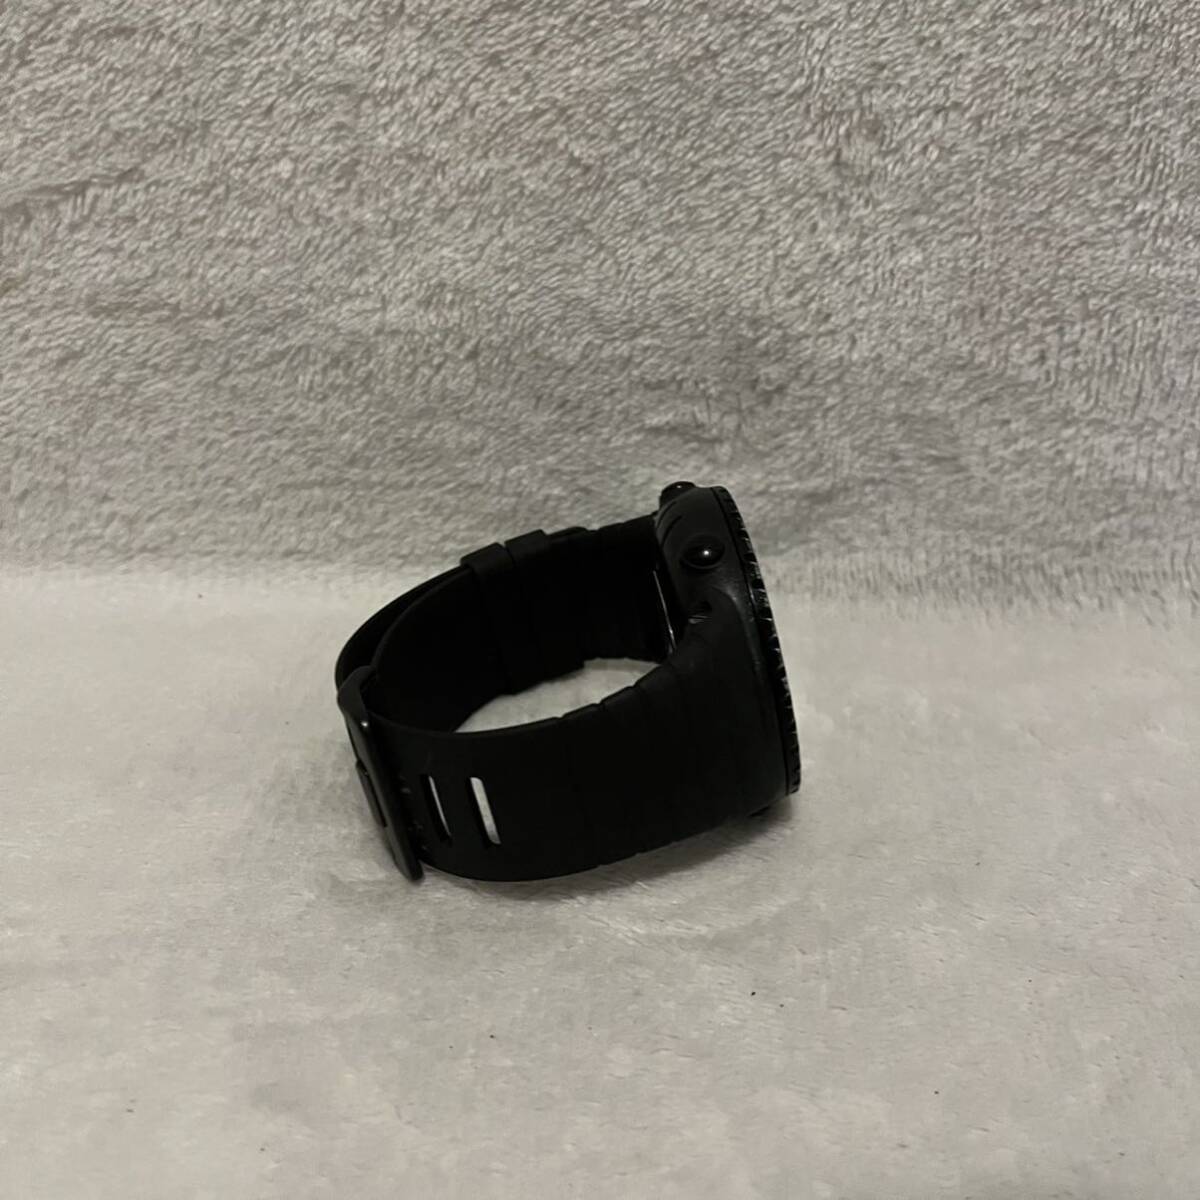 1円 SUUNTO CORE CLASSIC クォーツ腕時計 デジタル ラバー ブラック 黒 メンズ ブランド スント REGULAR 高度 気圧計 コンパス アウトドア _画像4